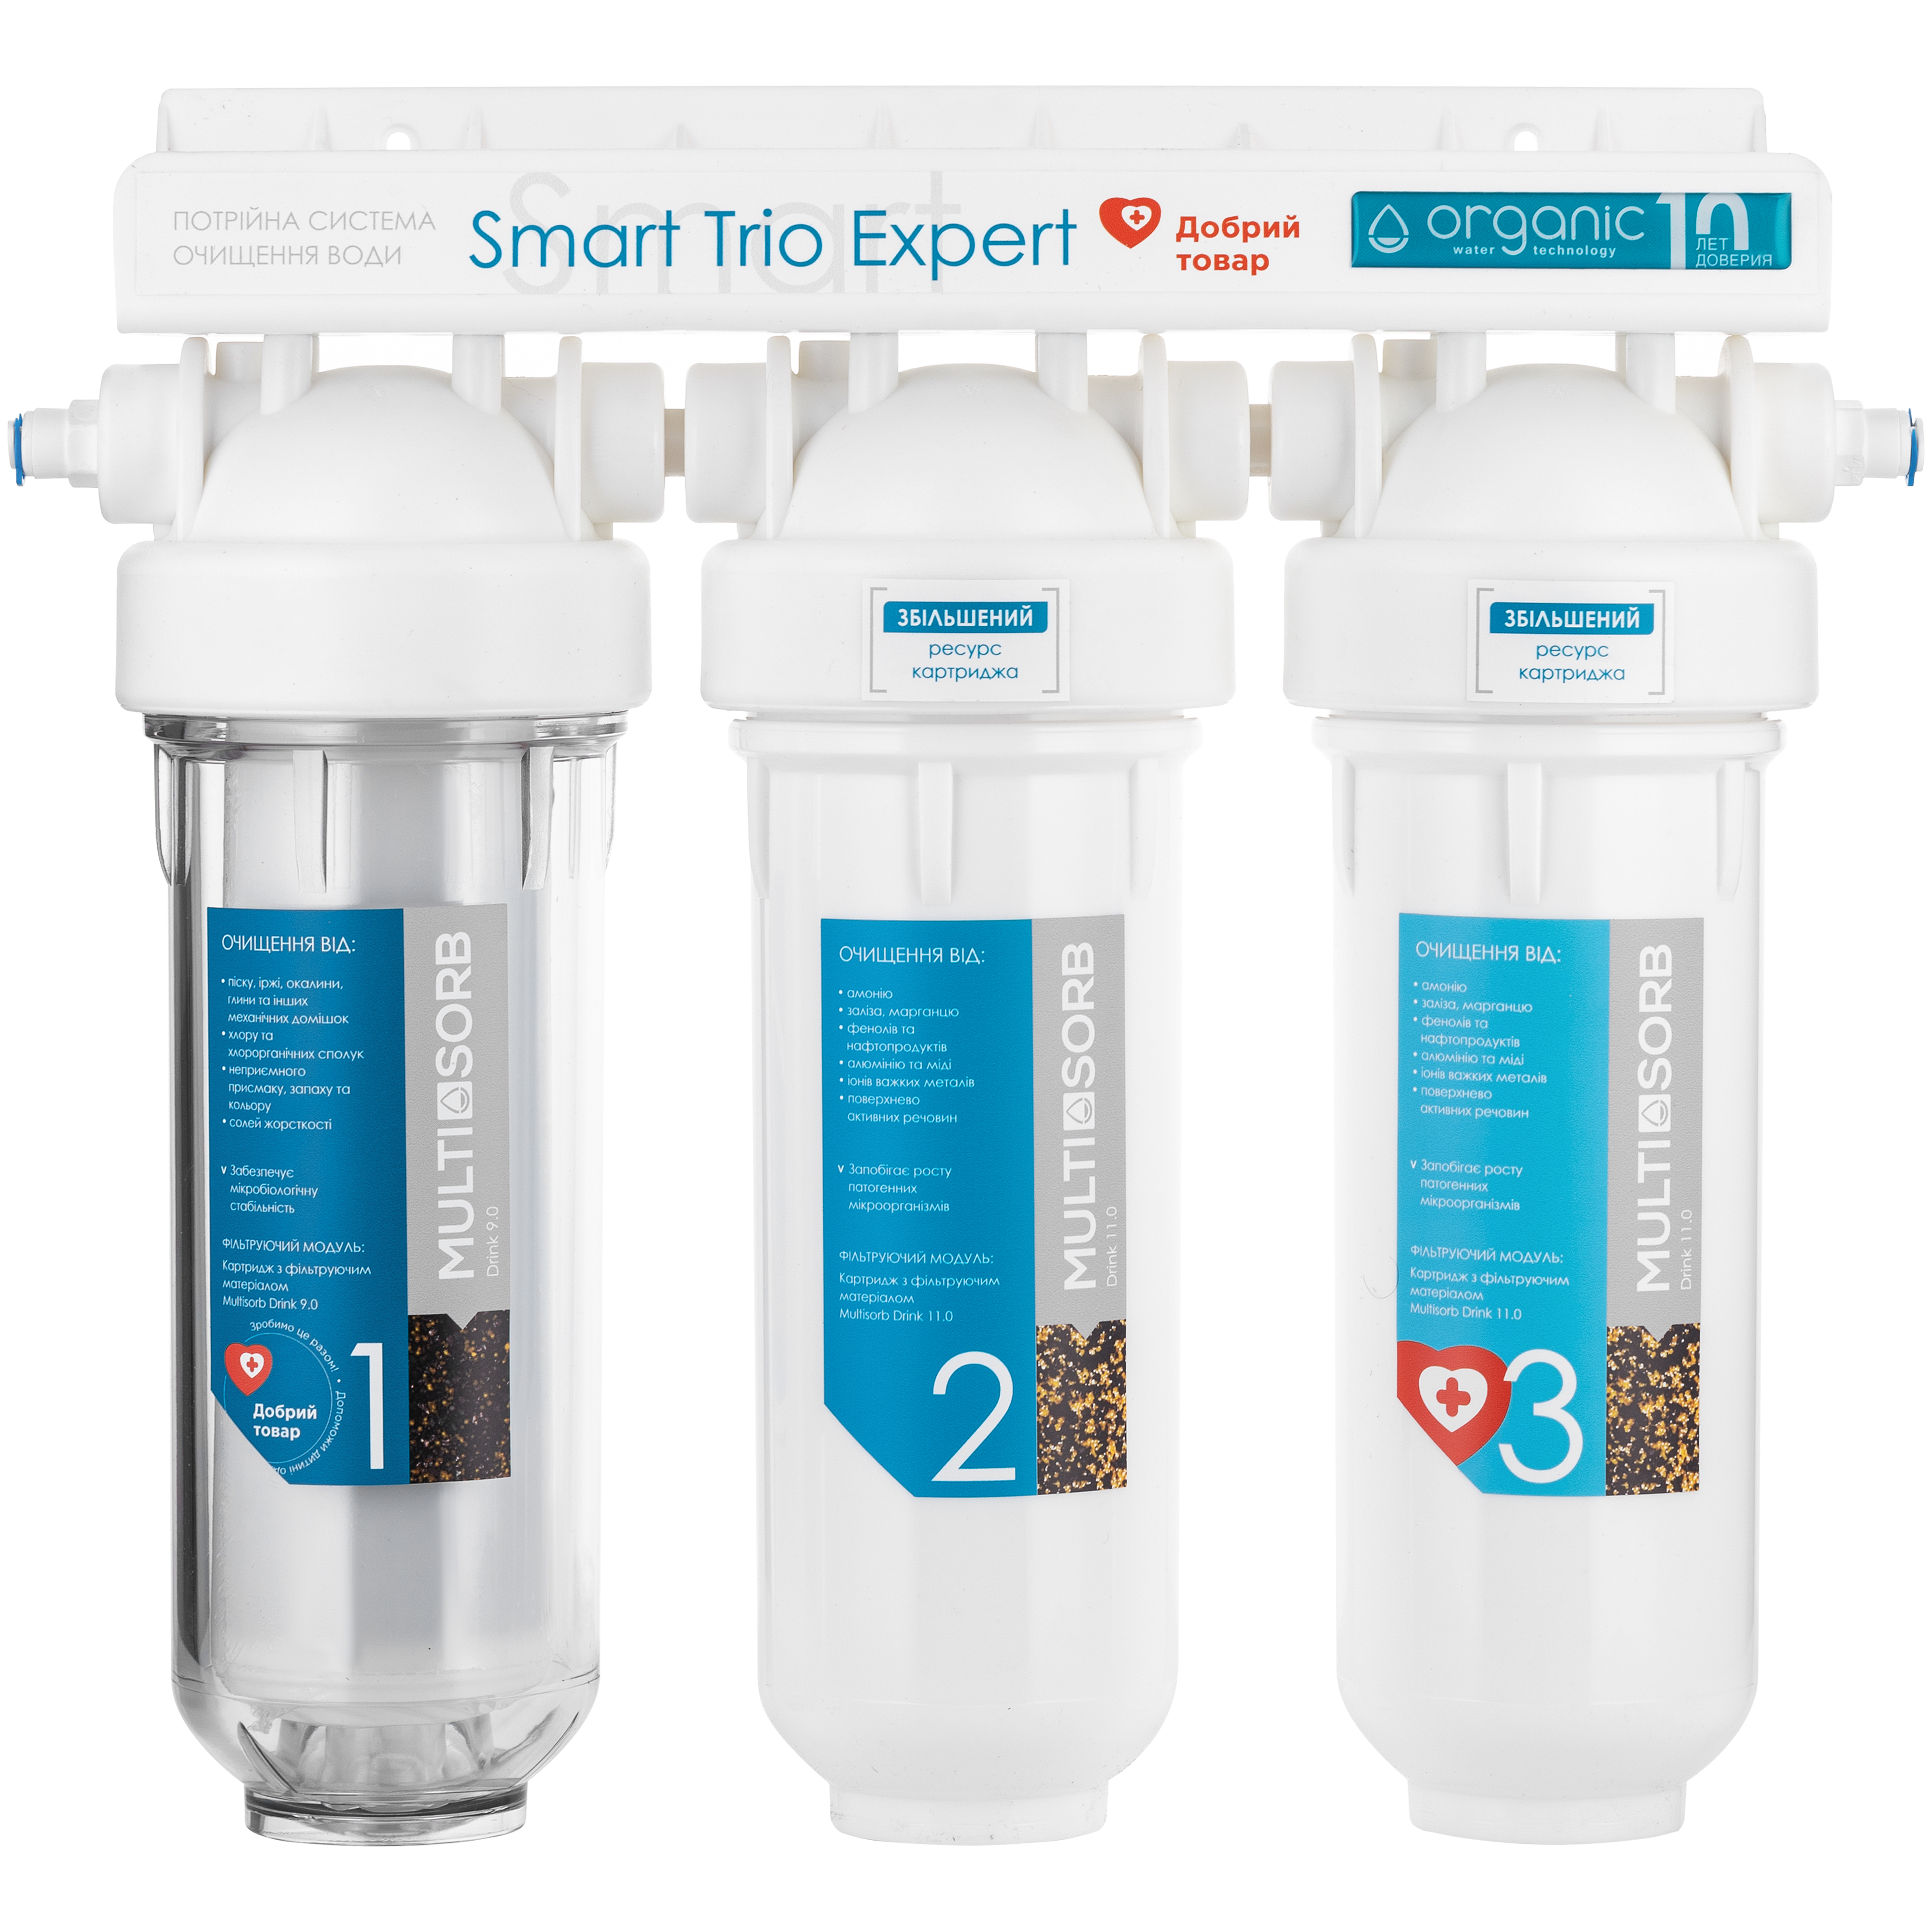 Инструкция фильтр для воды Organic Smart TRIO EXPERT